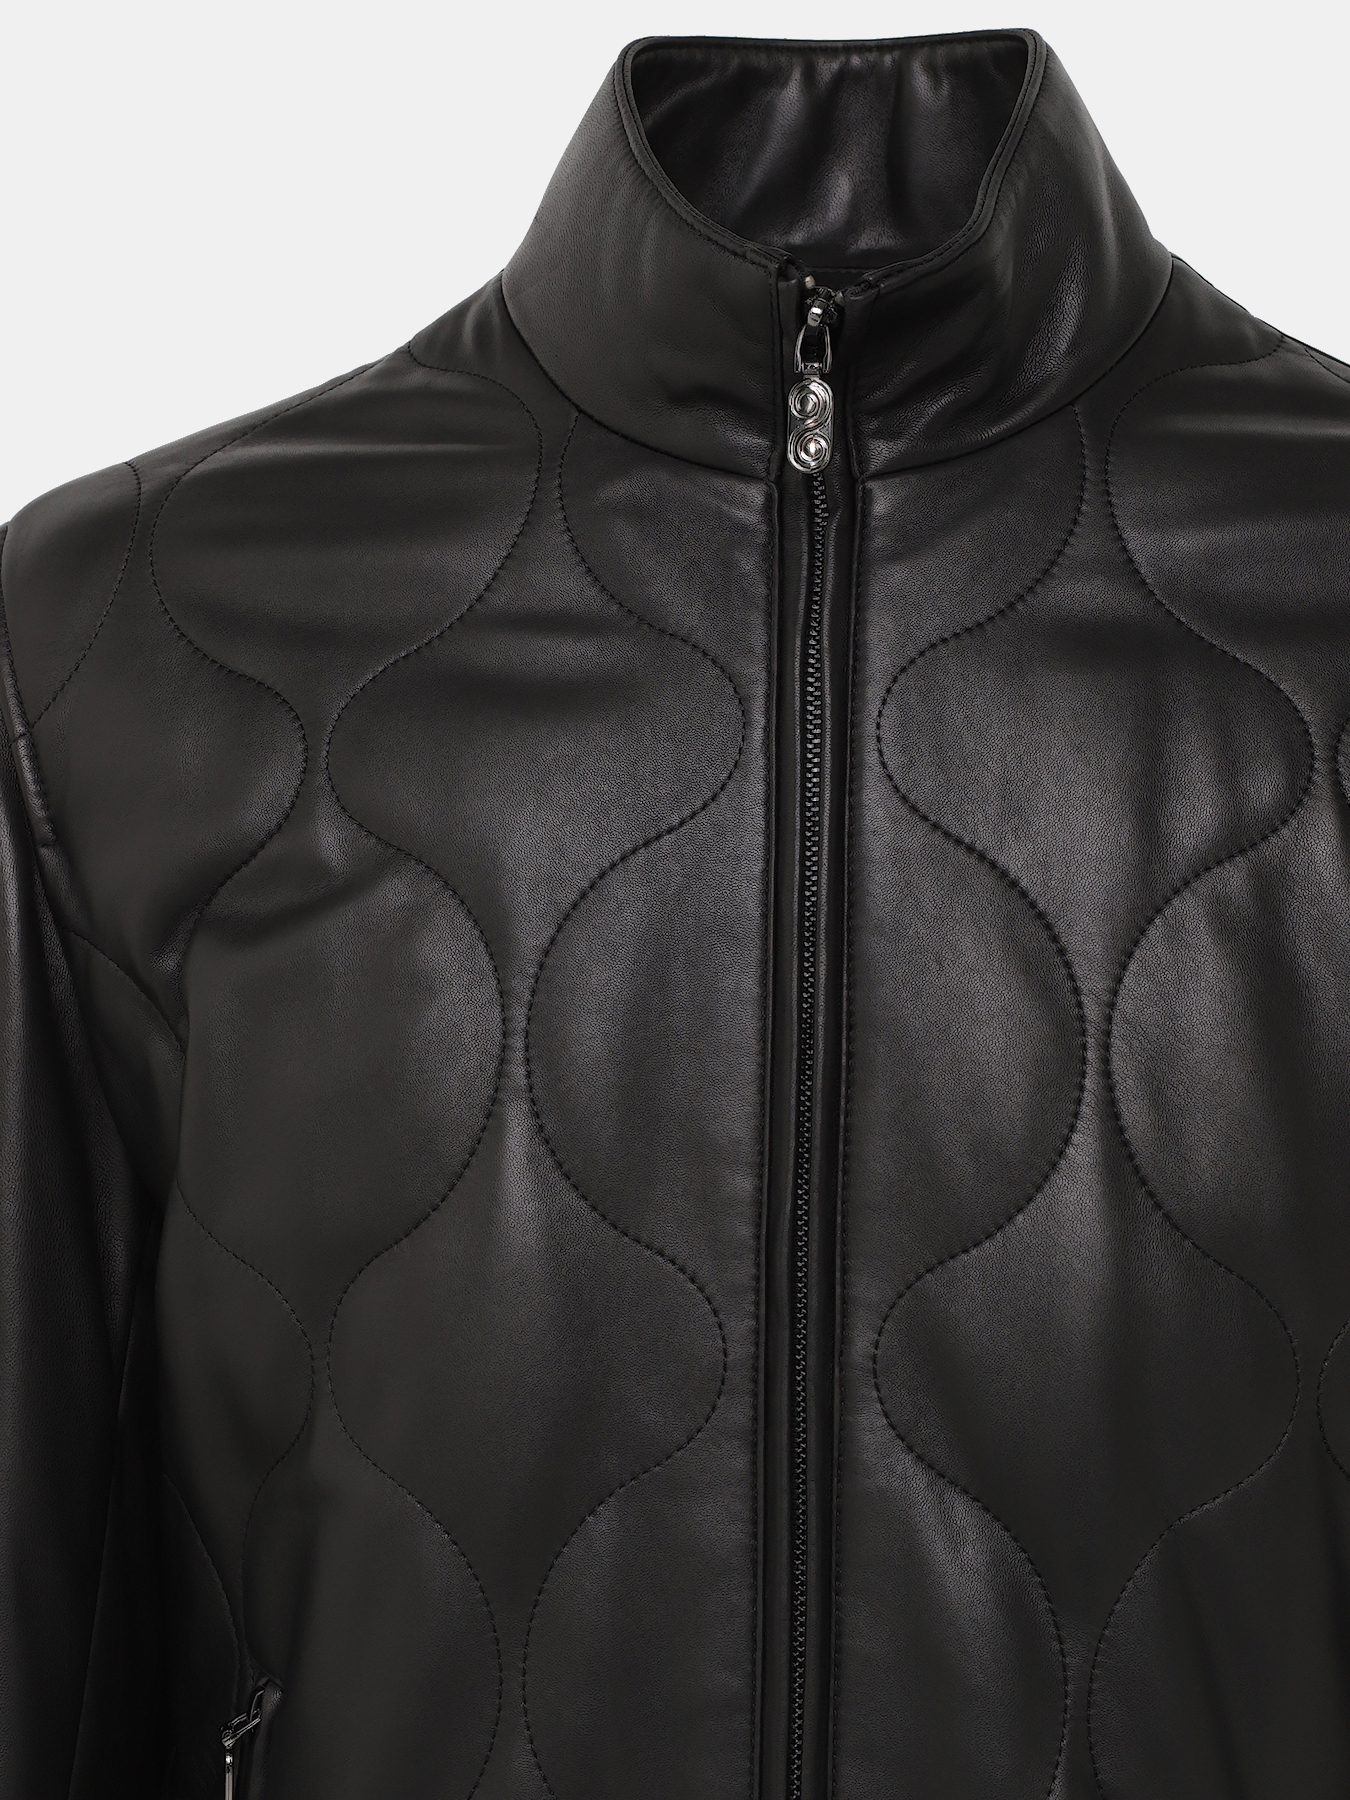 Кожаная куртка Alessandro Manzoni 390968-030, цвет черный, размер 58 - фото 3